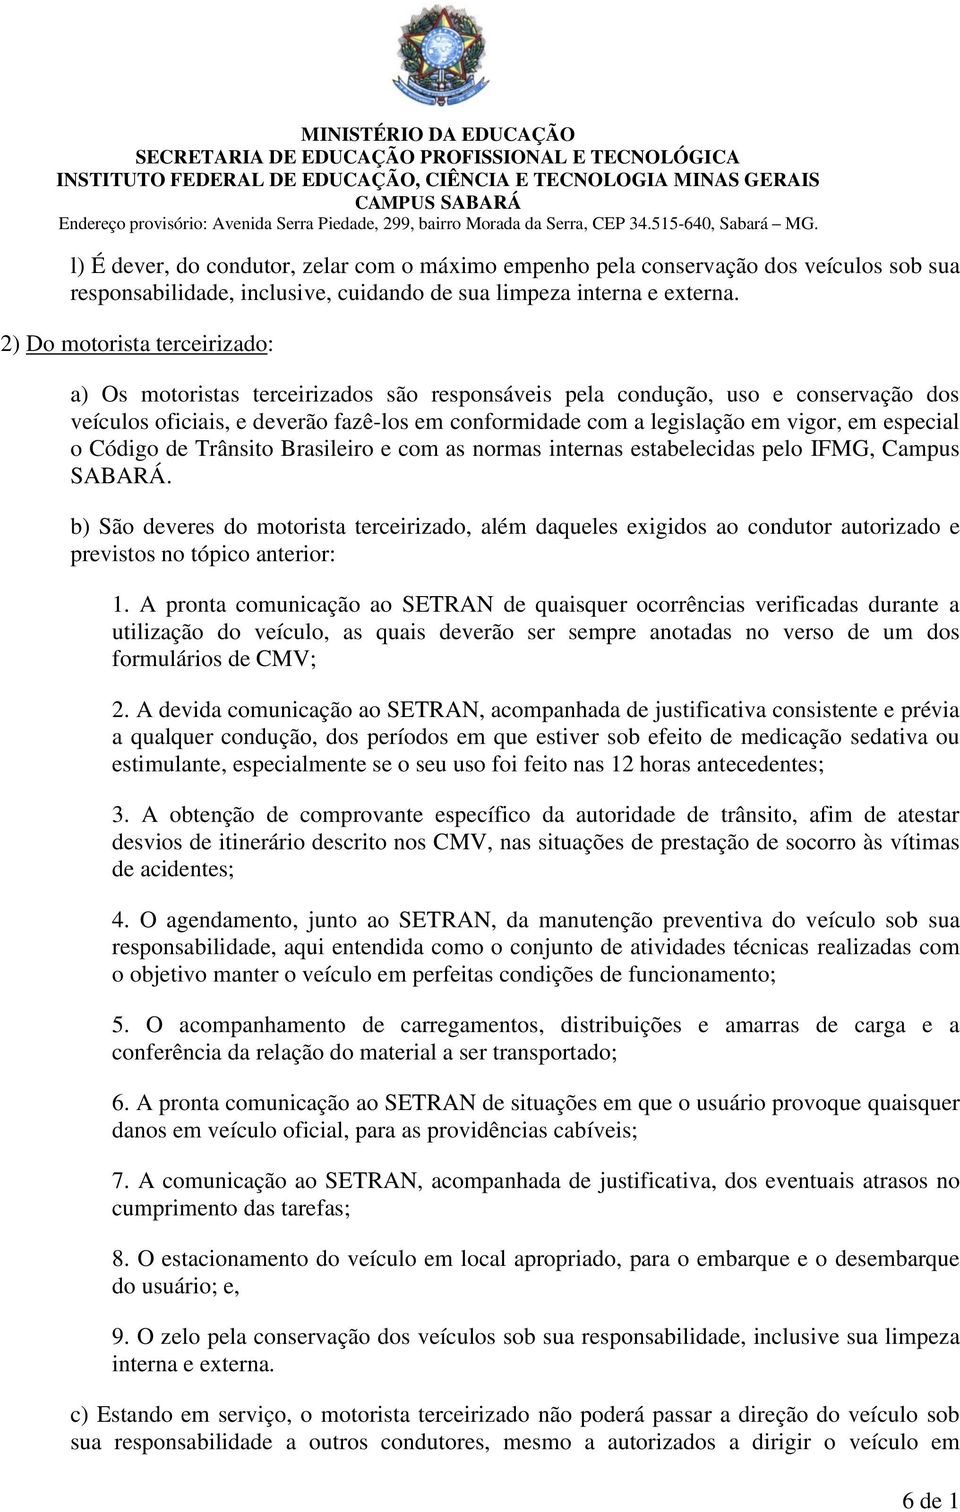 especial o Código de Trânsito Brasileiro e com as normas internas estabelecidas pelo IFMG, Campus SABARÁ.